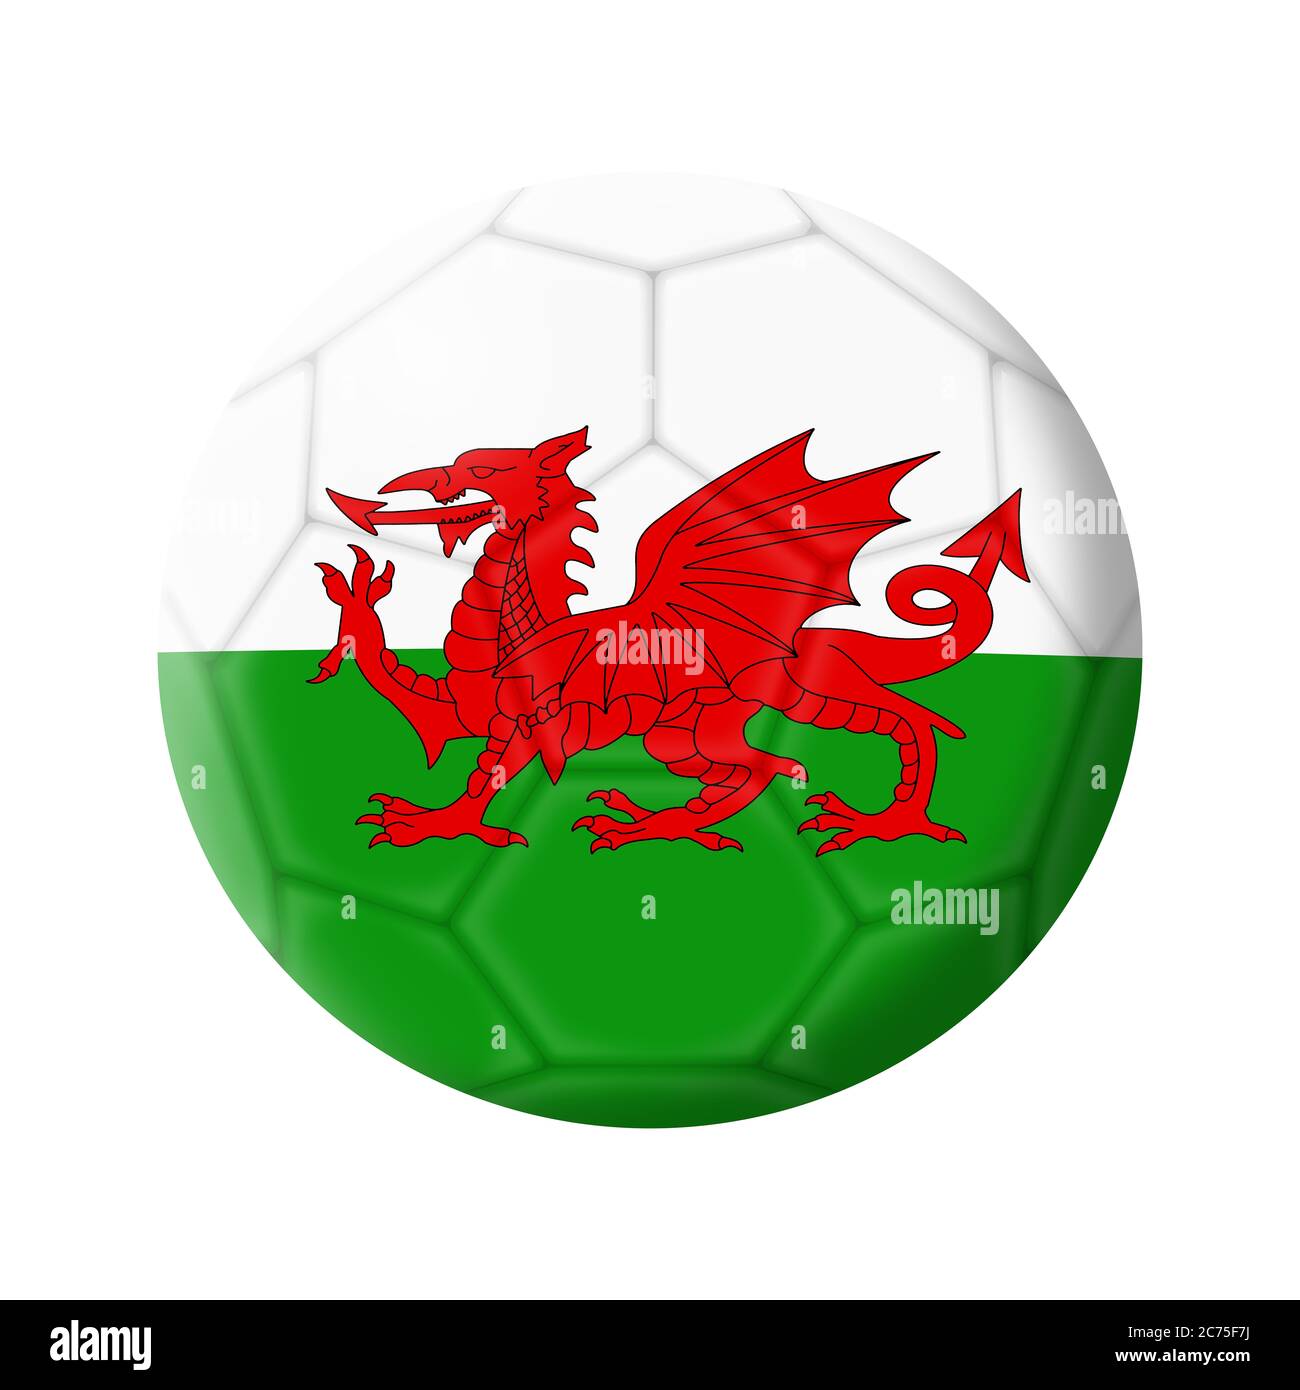 Wales calcio palla calcio 3D illustrazione isolato su bianco con clipping path Foto Stock